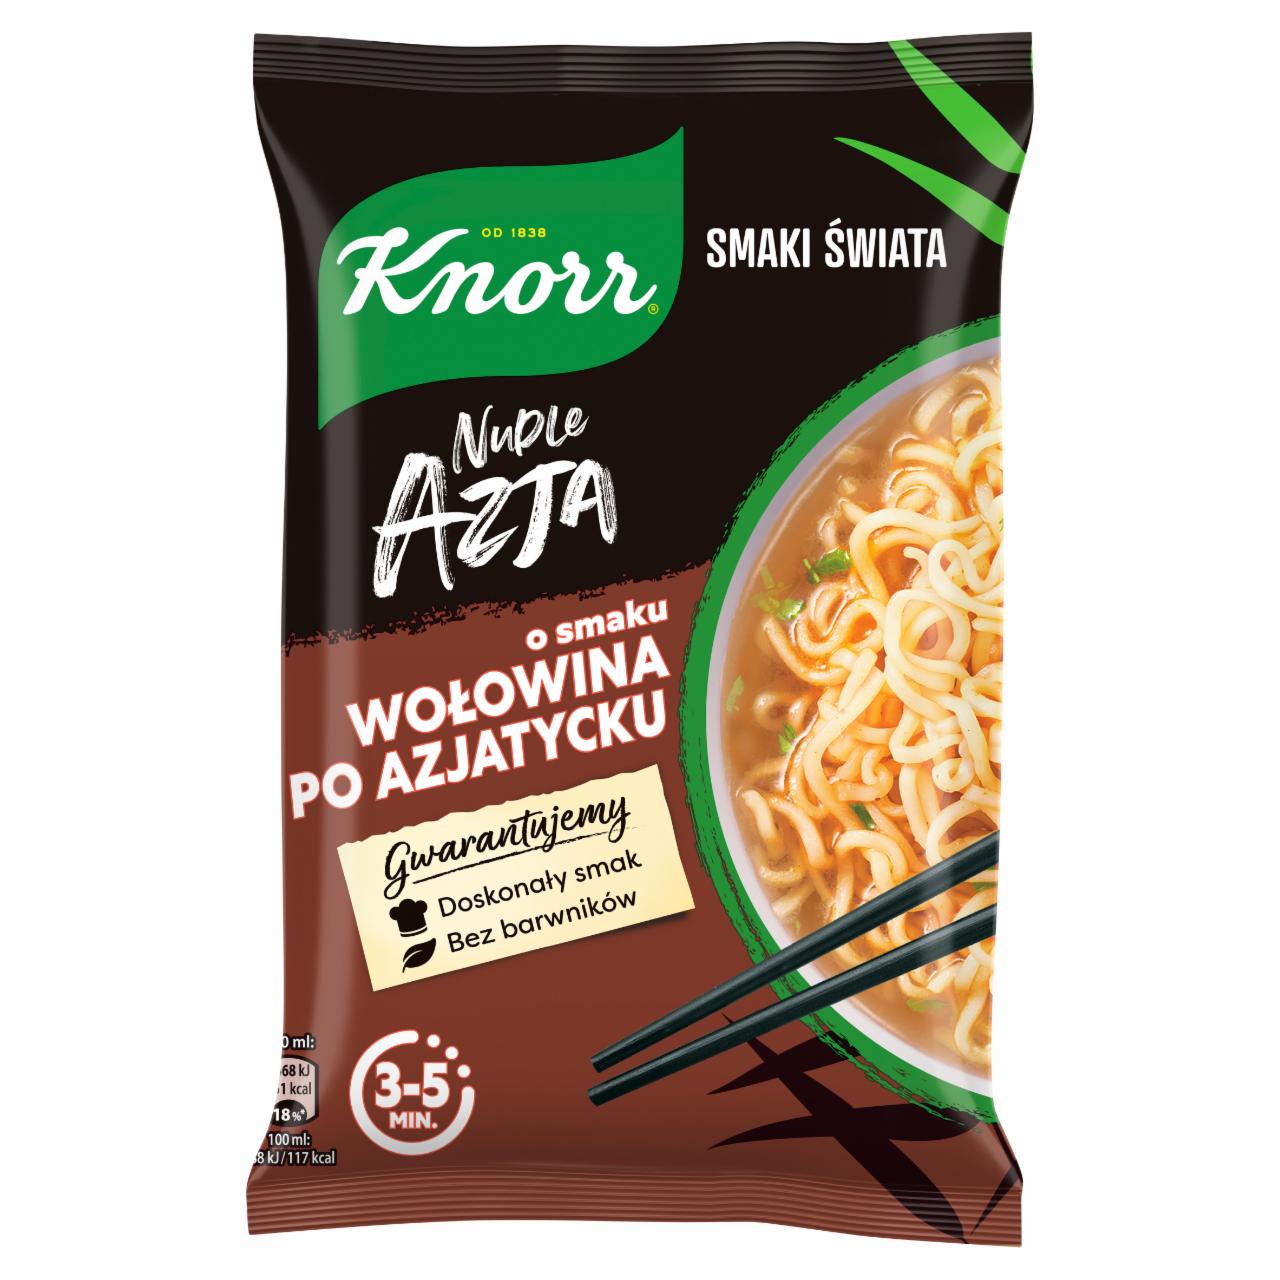 Zdjęcia - Knorr Nudle Azja Zupa-danie o smaku wołowina po azjatycku 68 g